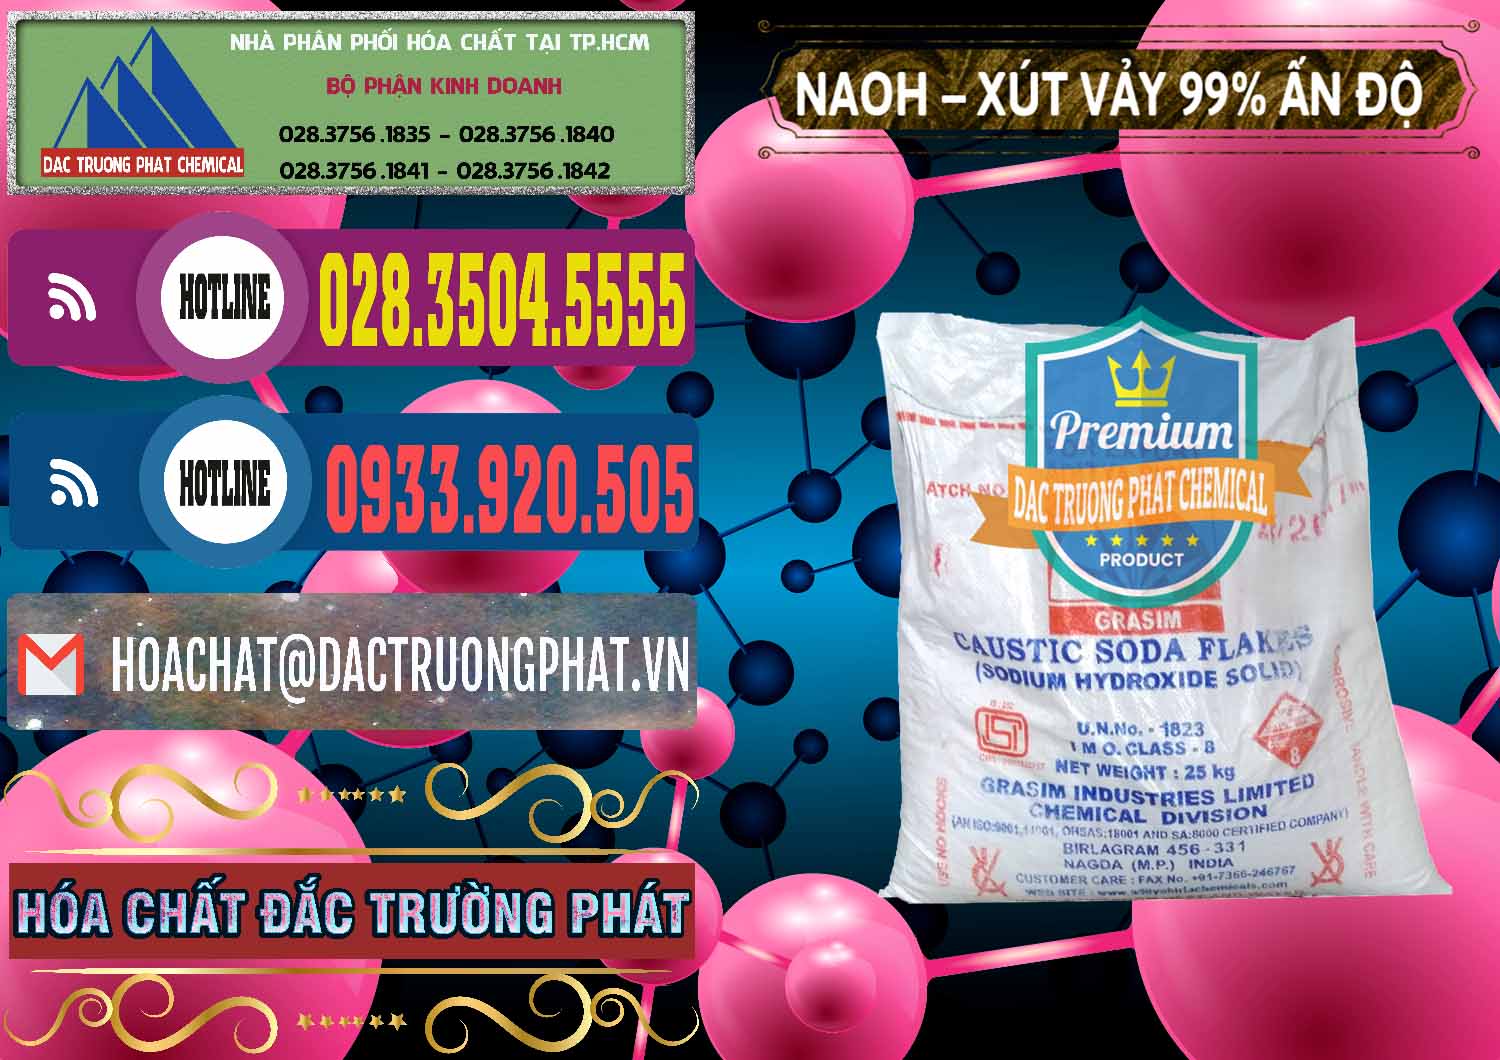 Cty chuyên nhập khẩu _ bán Xút Vảy - NaOH Vảy 99% Aditya Birla Grasim Ấn Độ India - 0171 - Chuyên cung cấp & phân phối hóa chất tại TP.HCM - muabanhoachat.com.vn